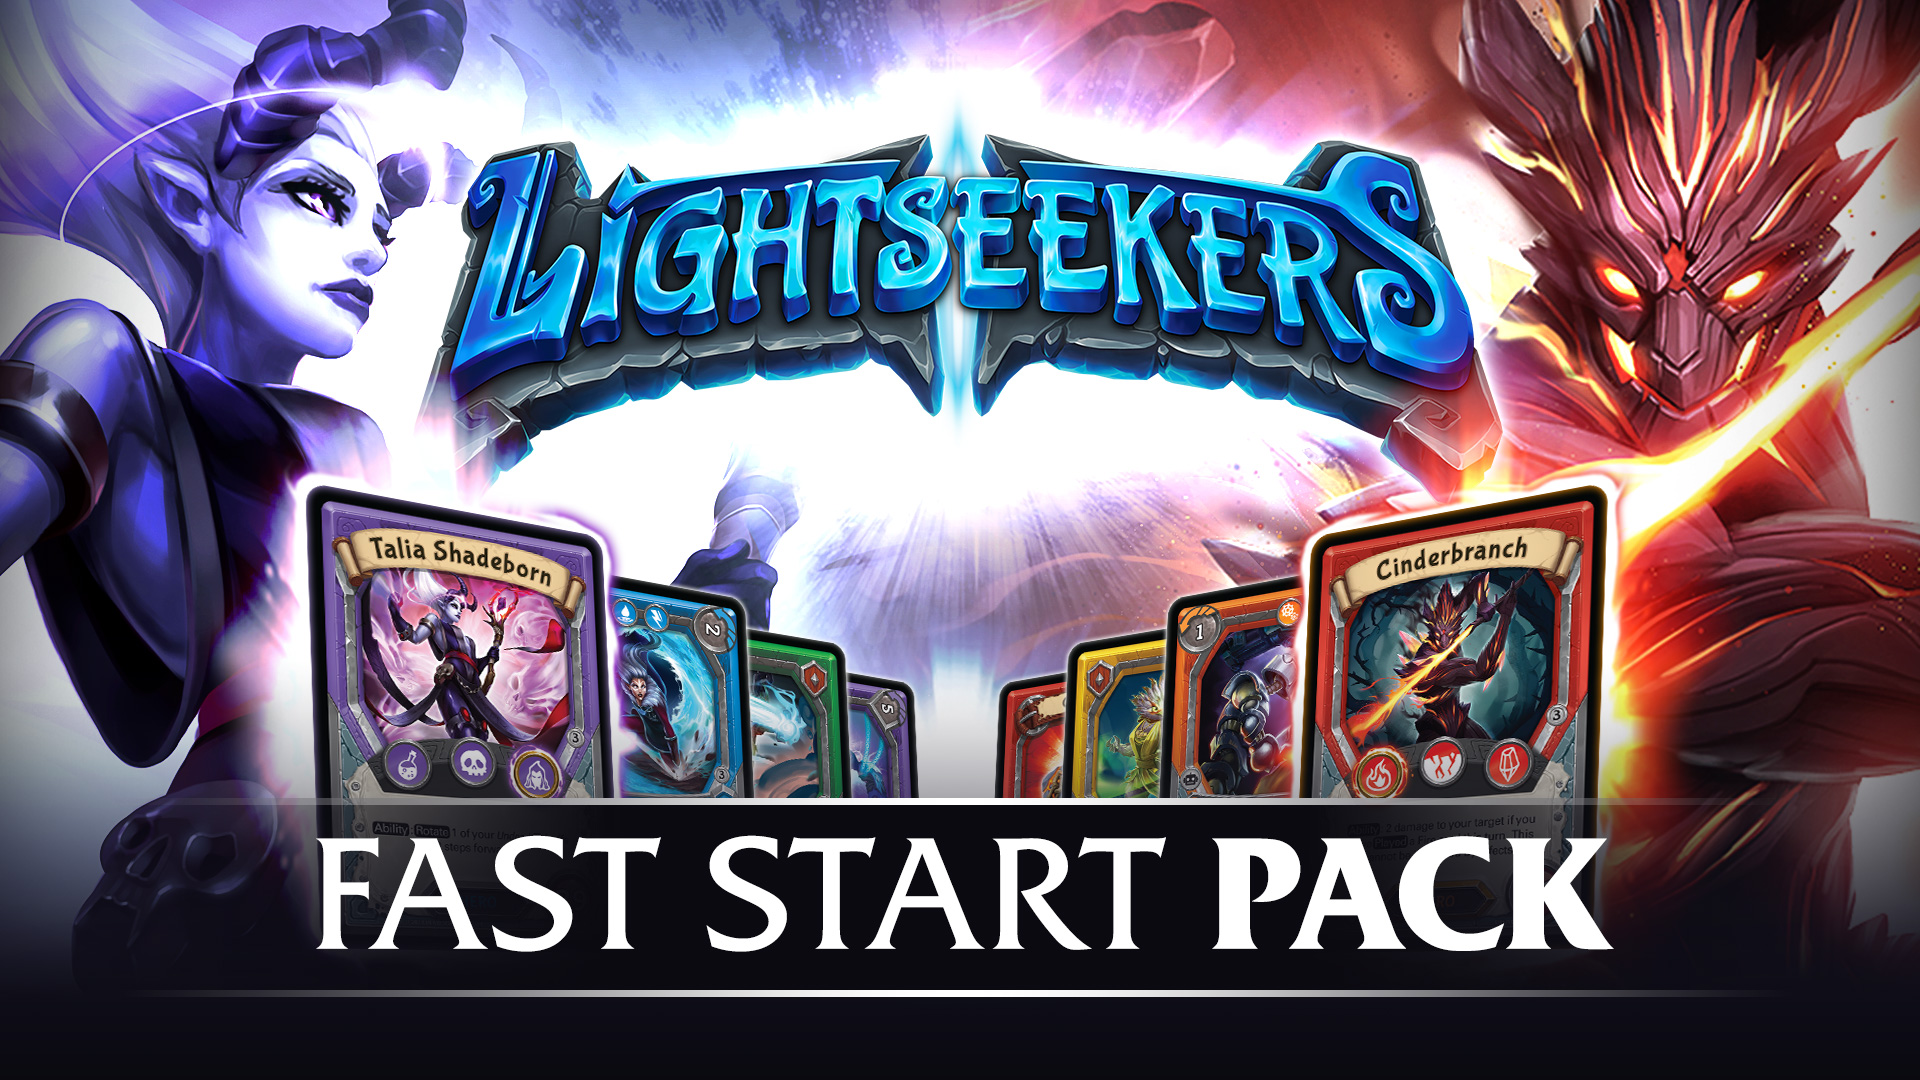 Lightseekers Fast Start Pack